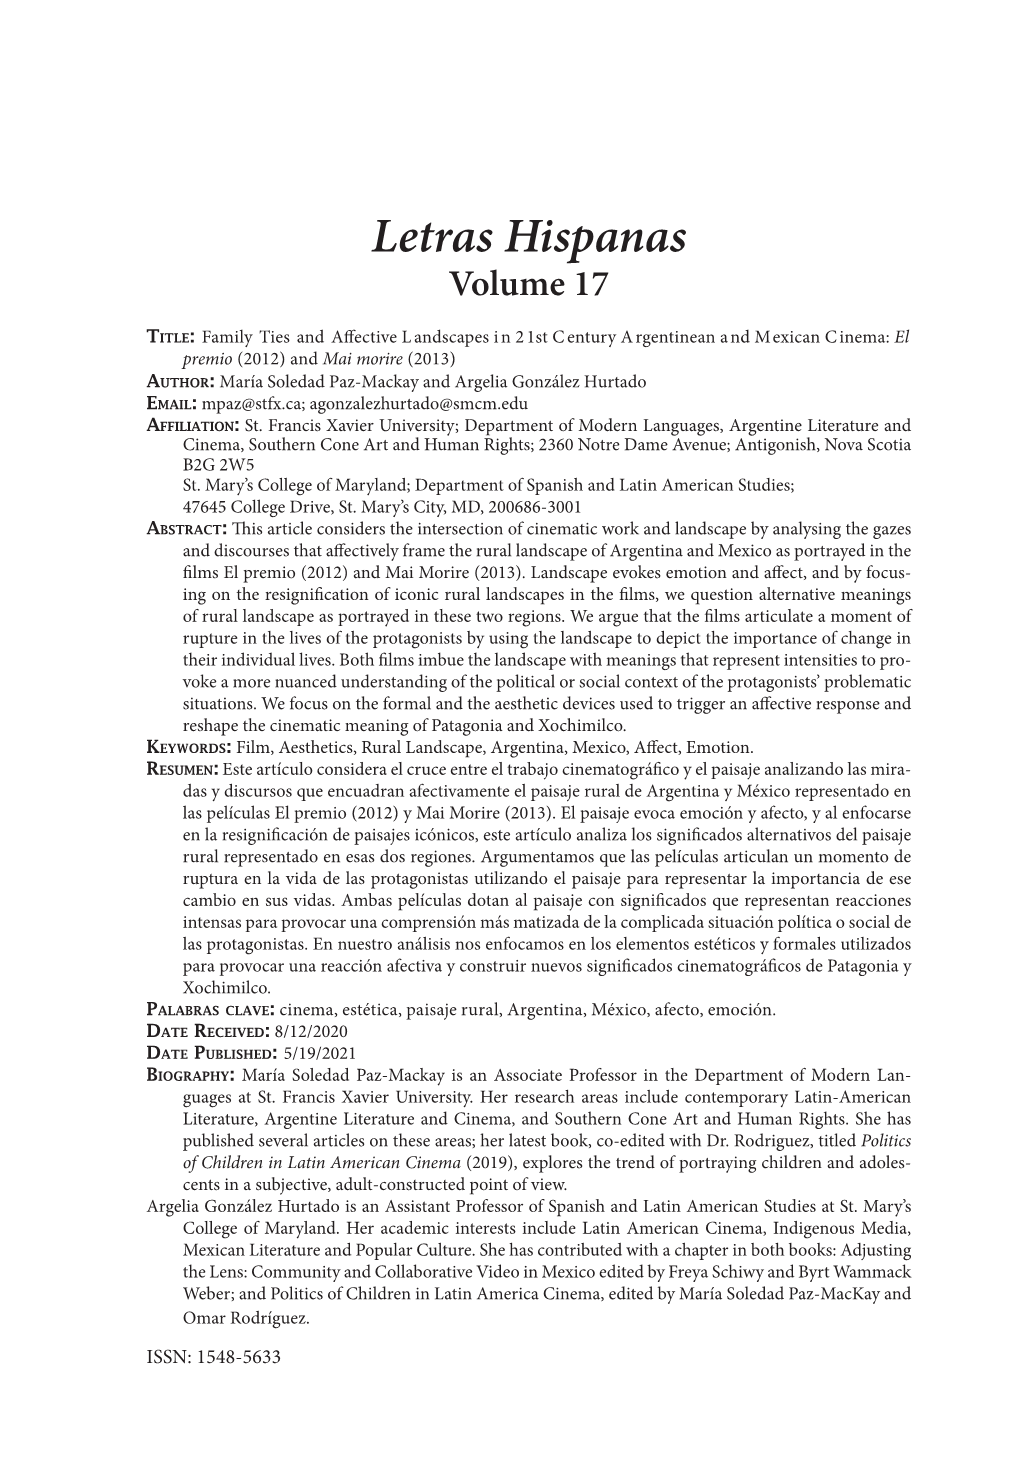 Letras Hispanas Volume 17